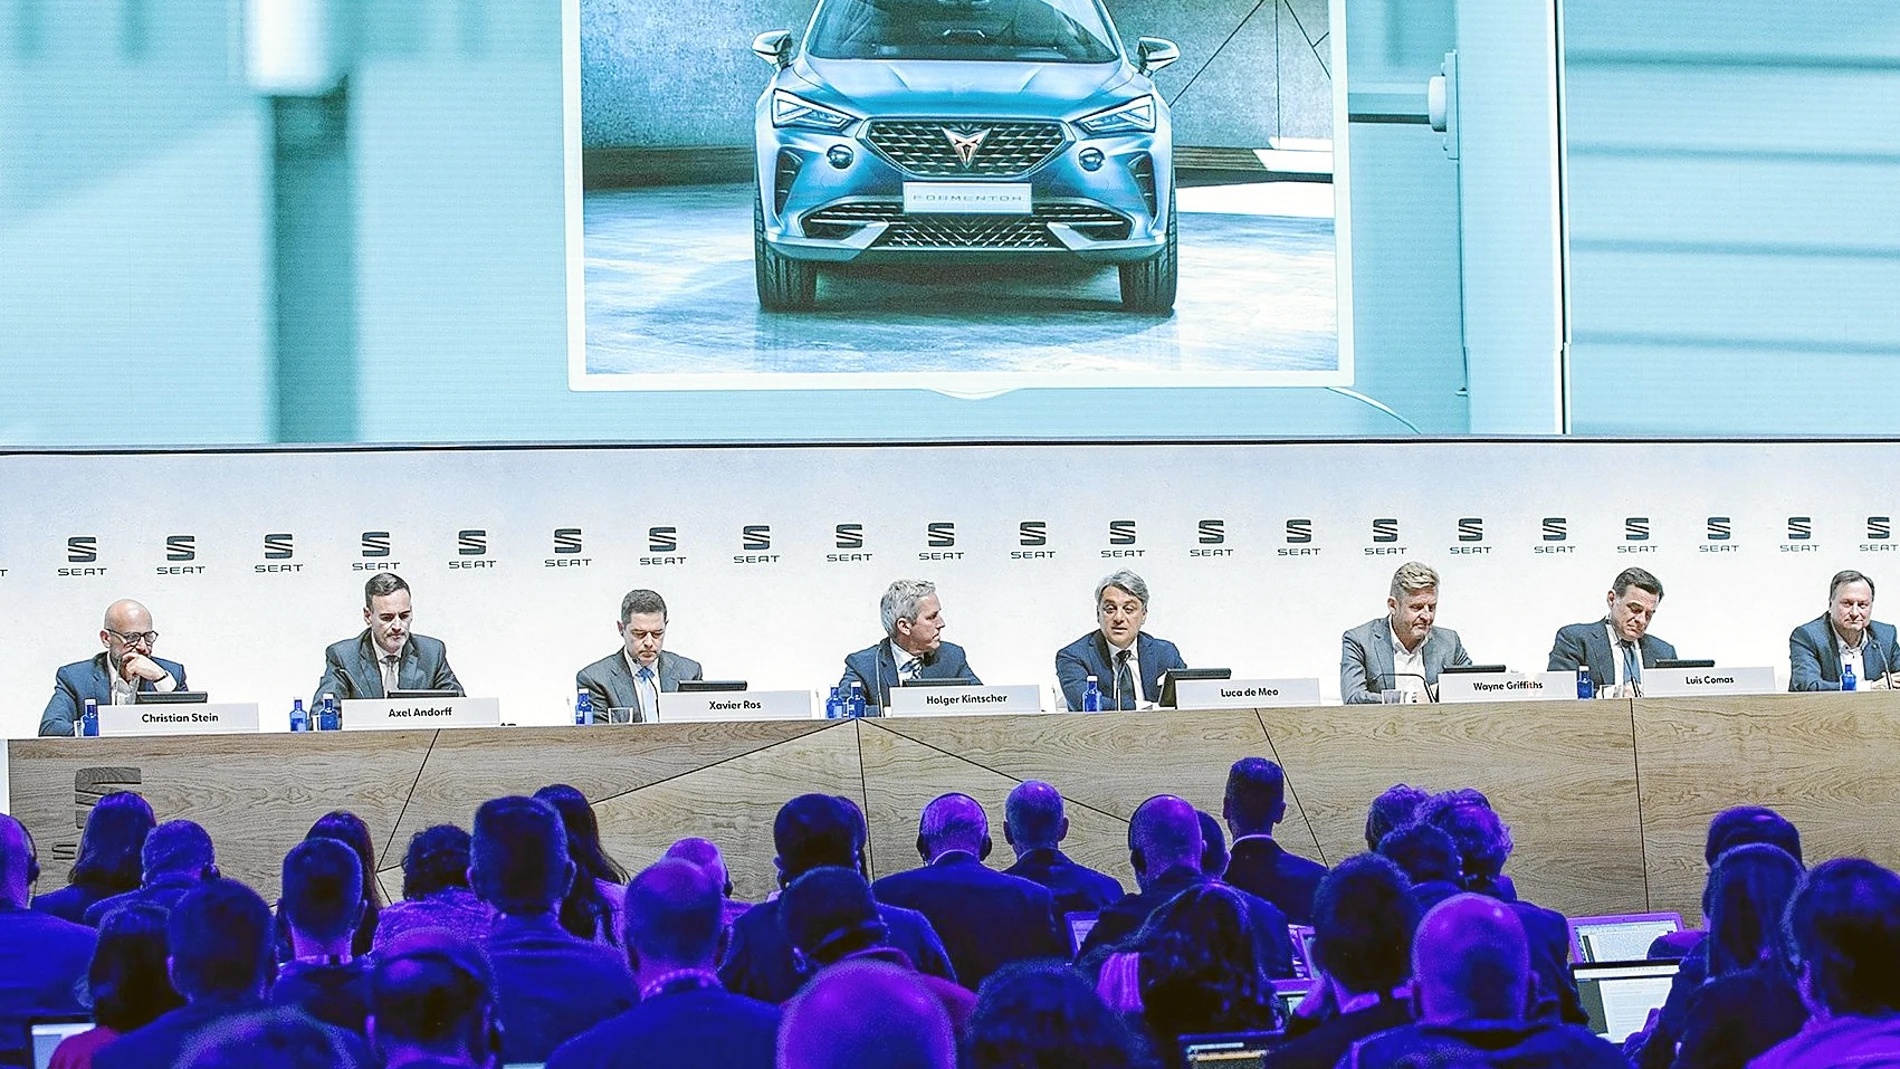 El nuevo SUV de Cupra, la nueva marca de Seat, llegará al mercado en 2020